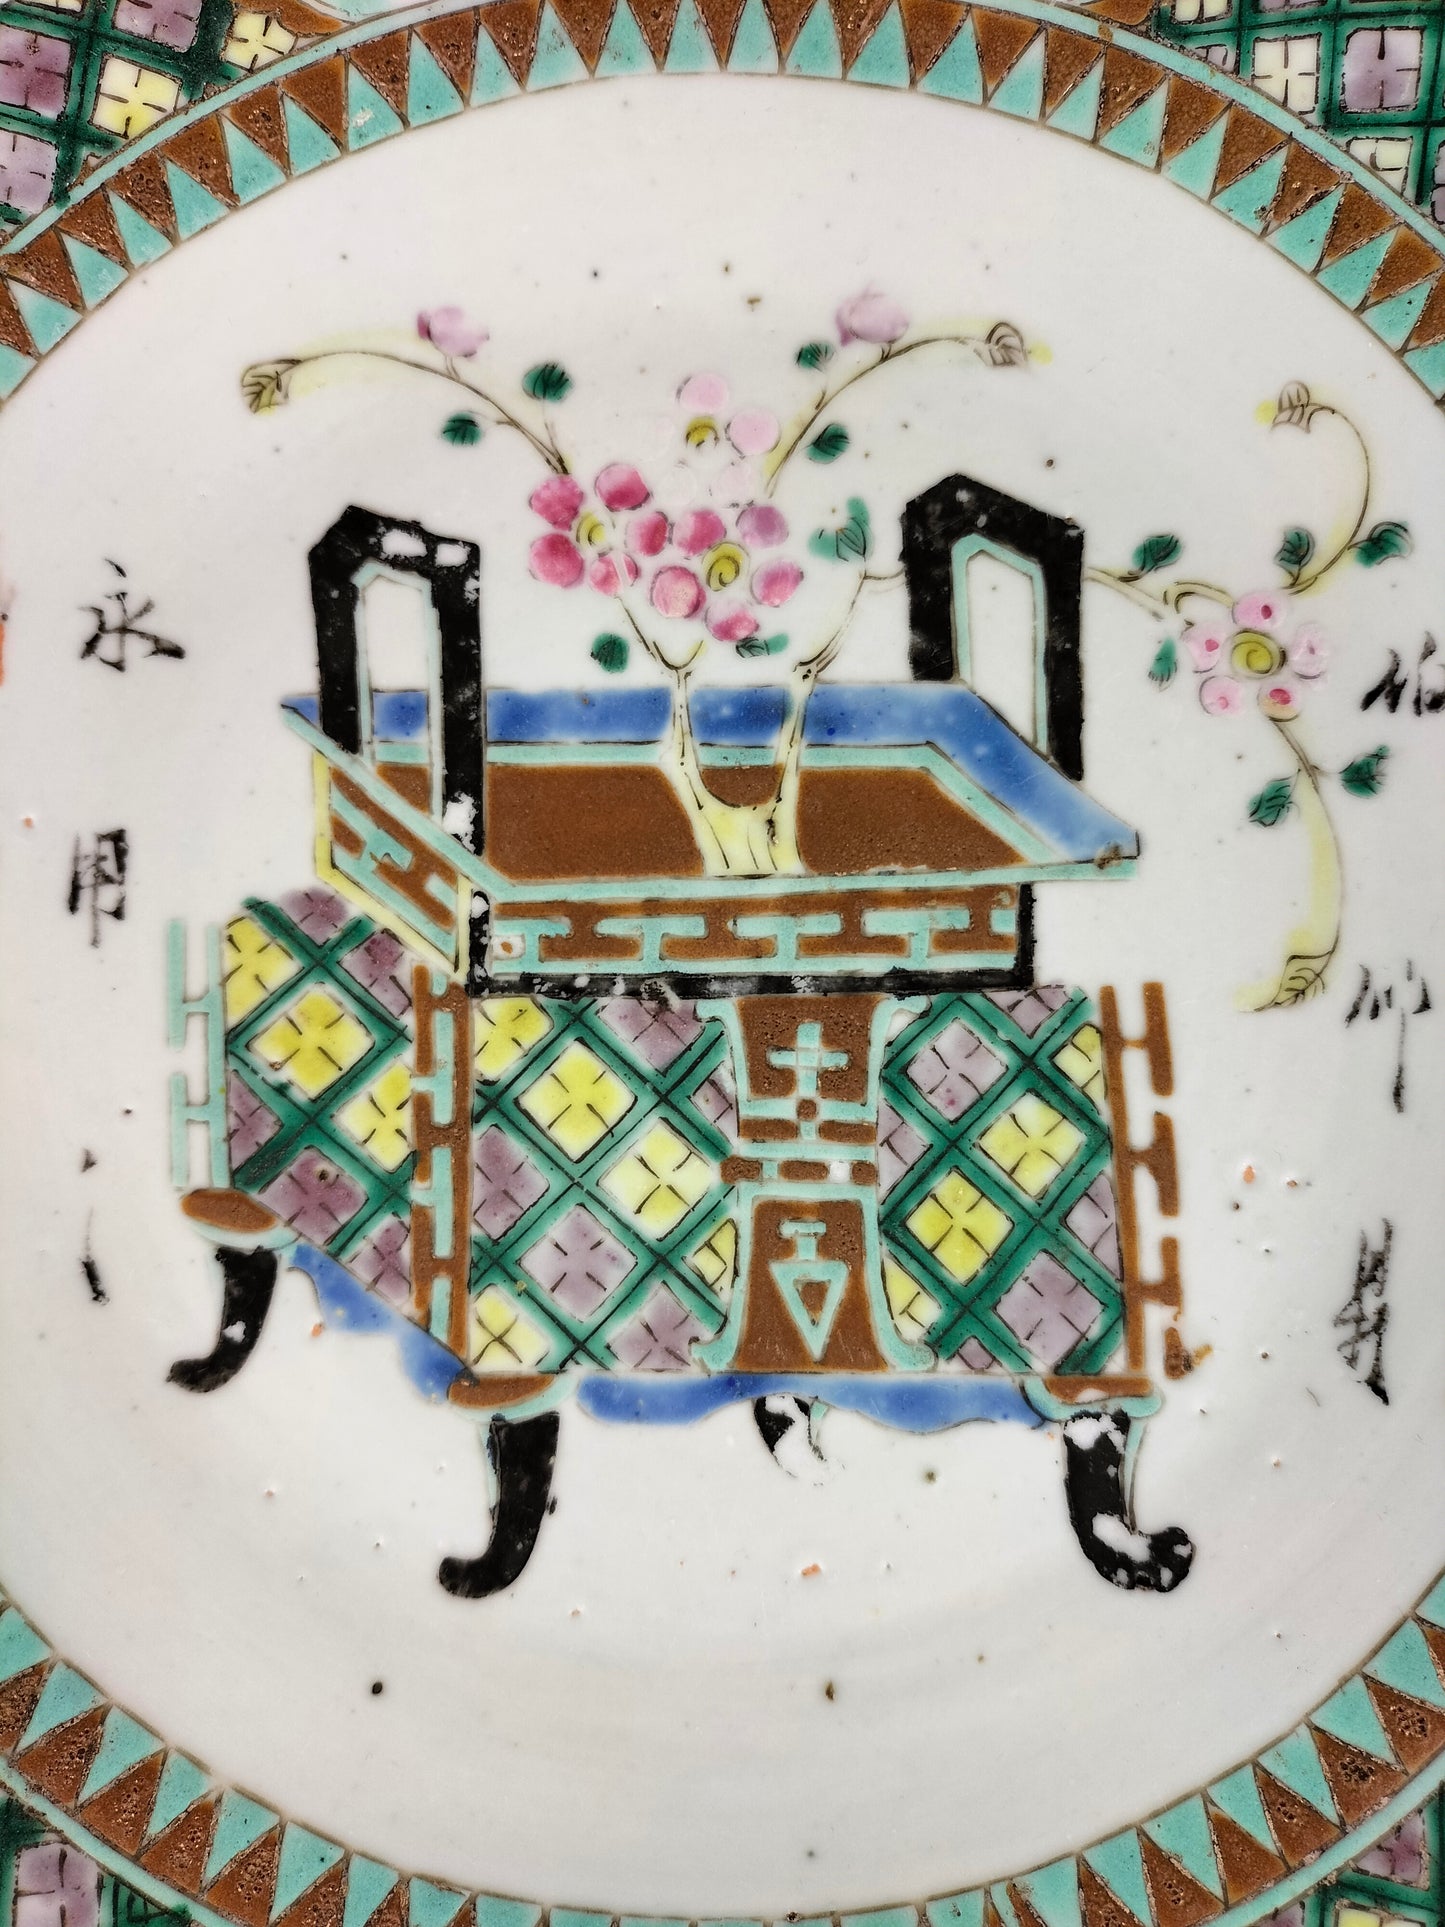 طبق صيني عتيق كبير مزين بسلة زهور // عهد أسرة تشينغ - القرن التاسع عشر